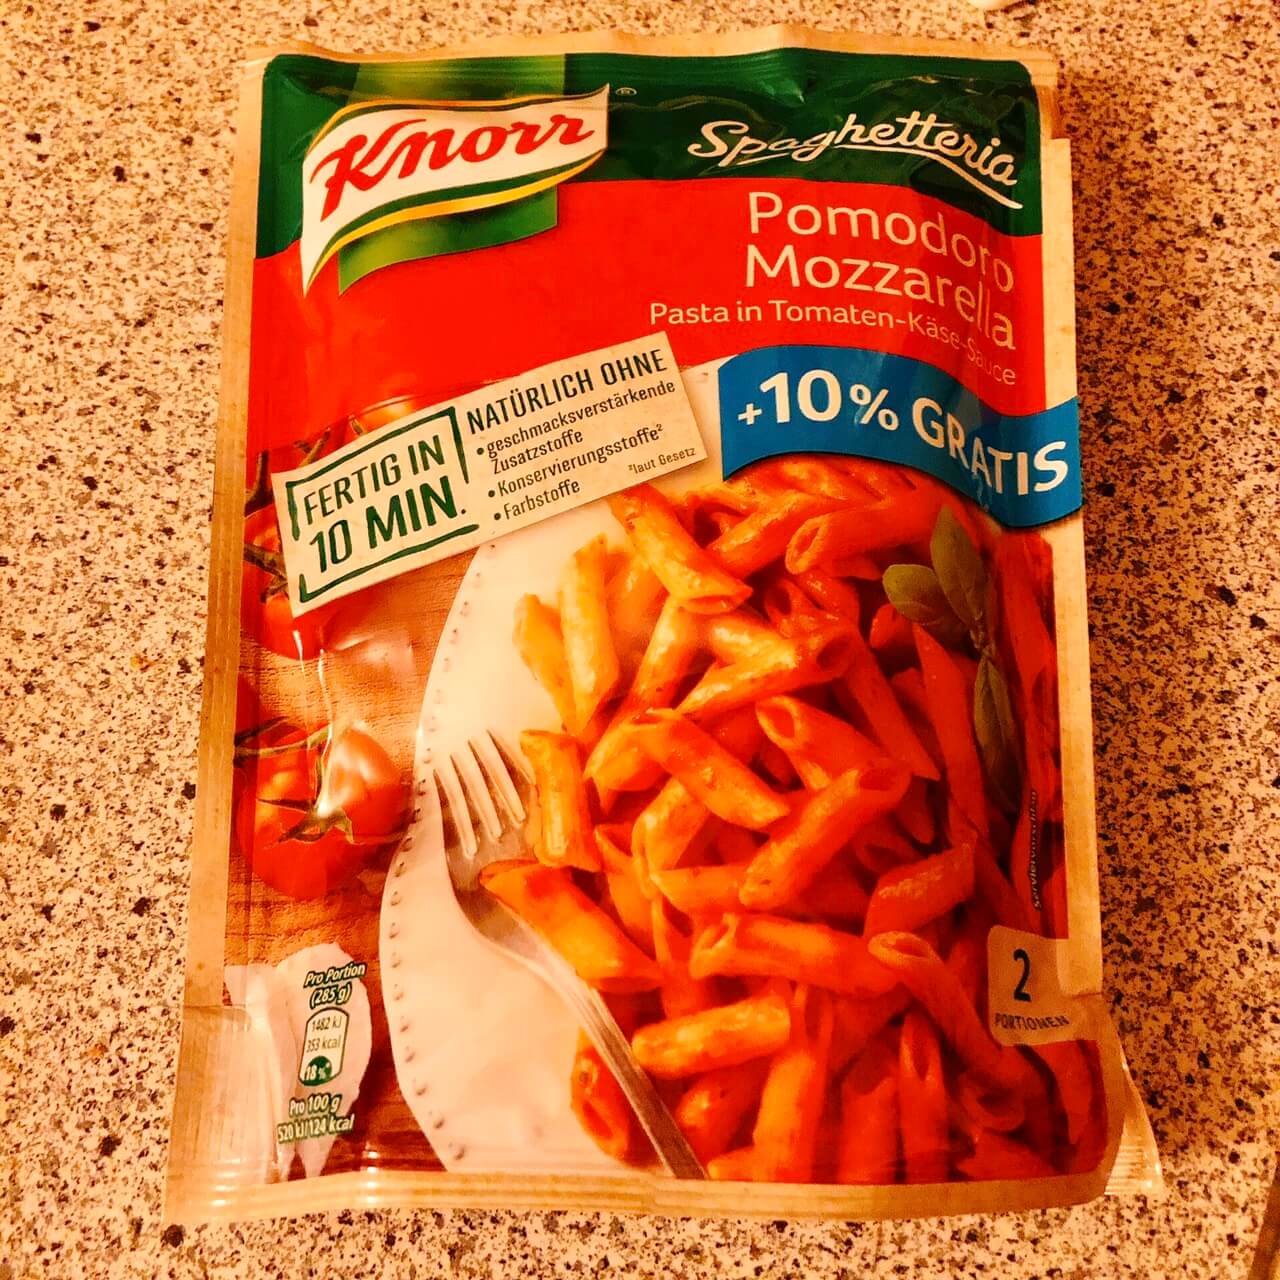 Knorr クノールのインスタント パスタが簡単に作れて美味しかったのでまた買いたい件 タビシタ